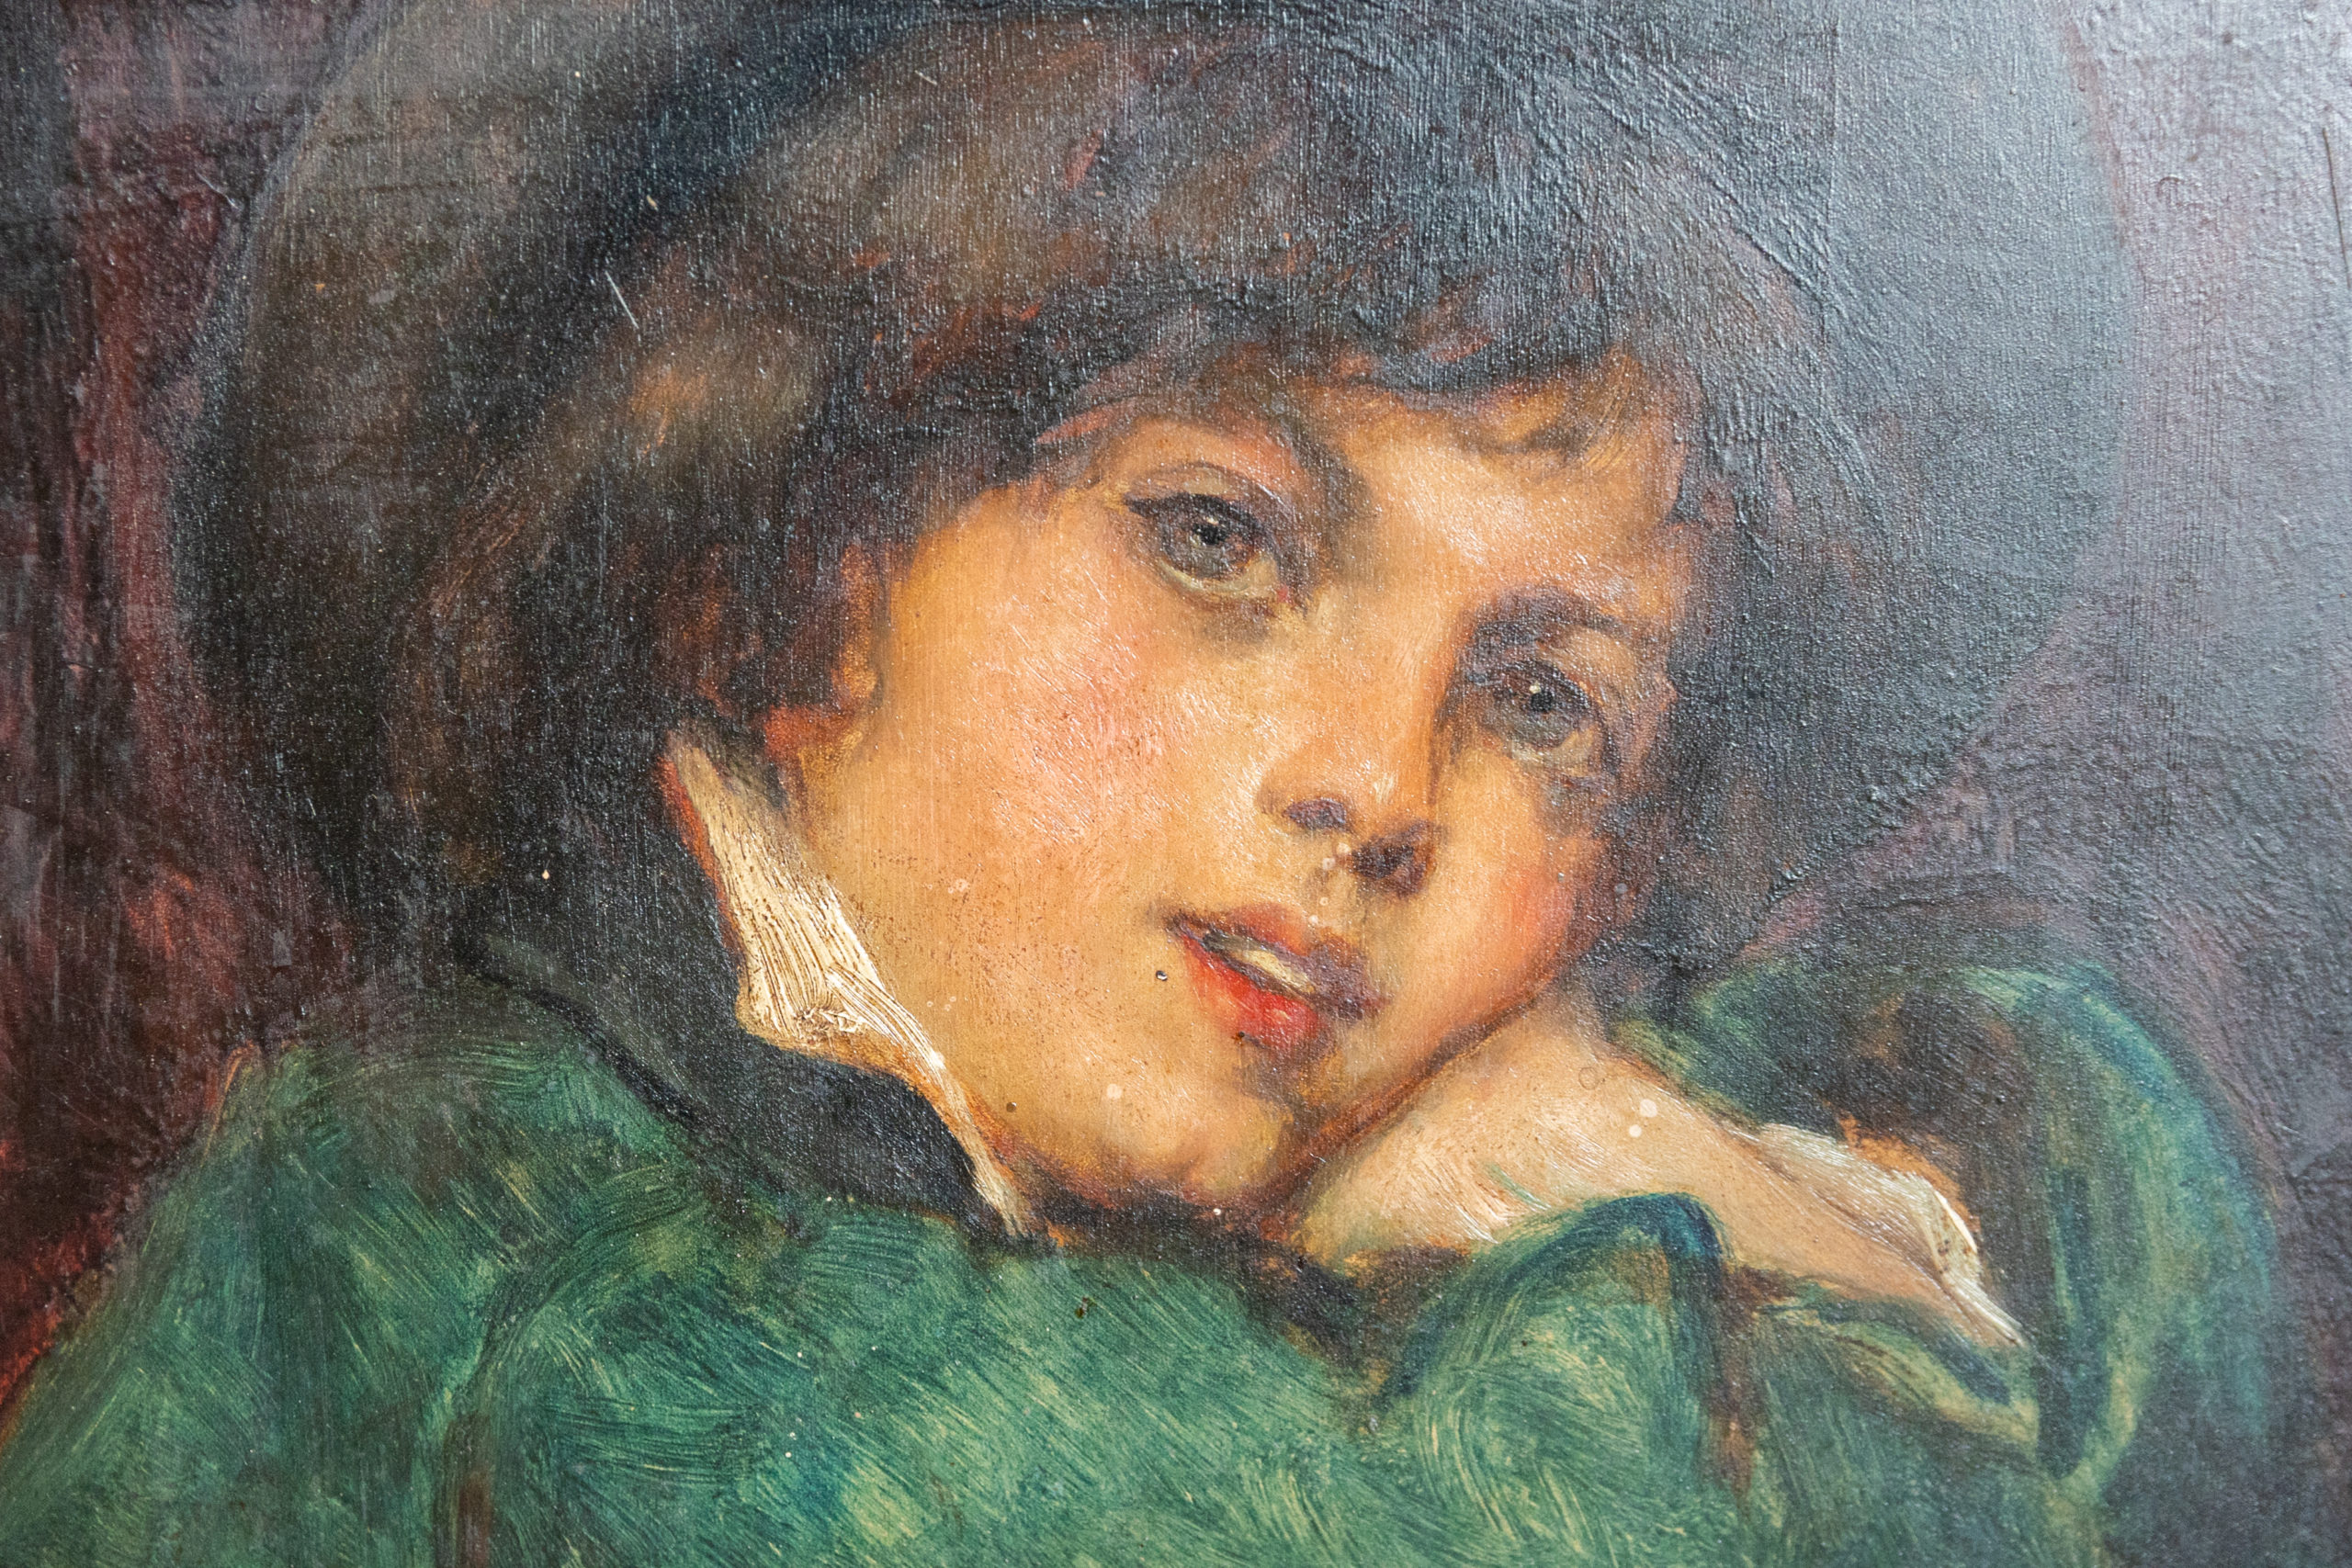 Leon-herbo-peinture-XIXe-jeune-garcon-portrait-panneau-aurore-morisse-antiquaire-marchand-art-expertise-liège-affaire-conclue4